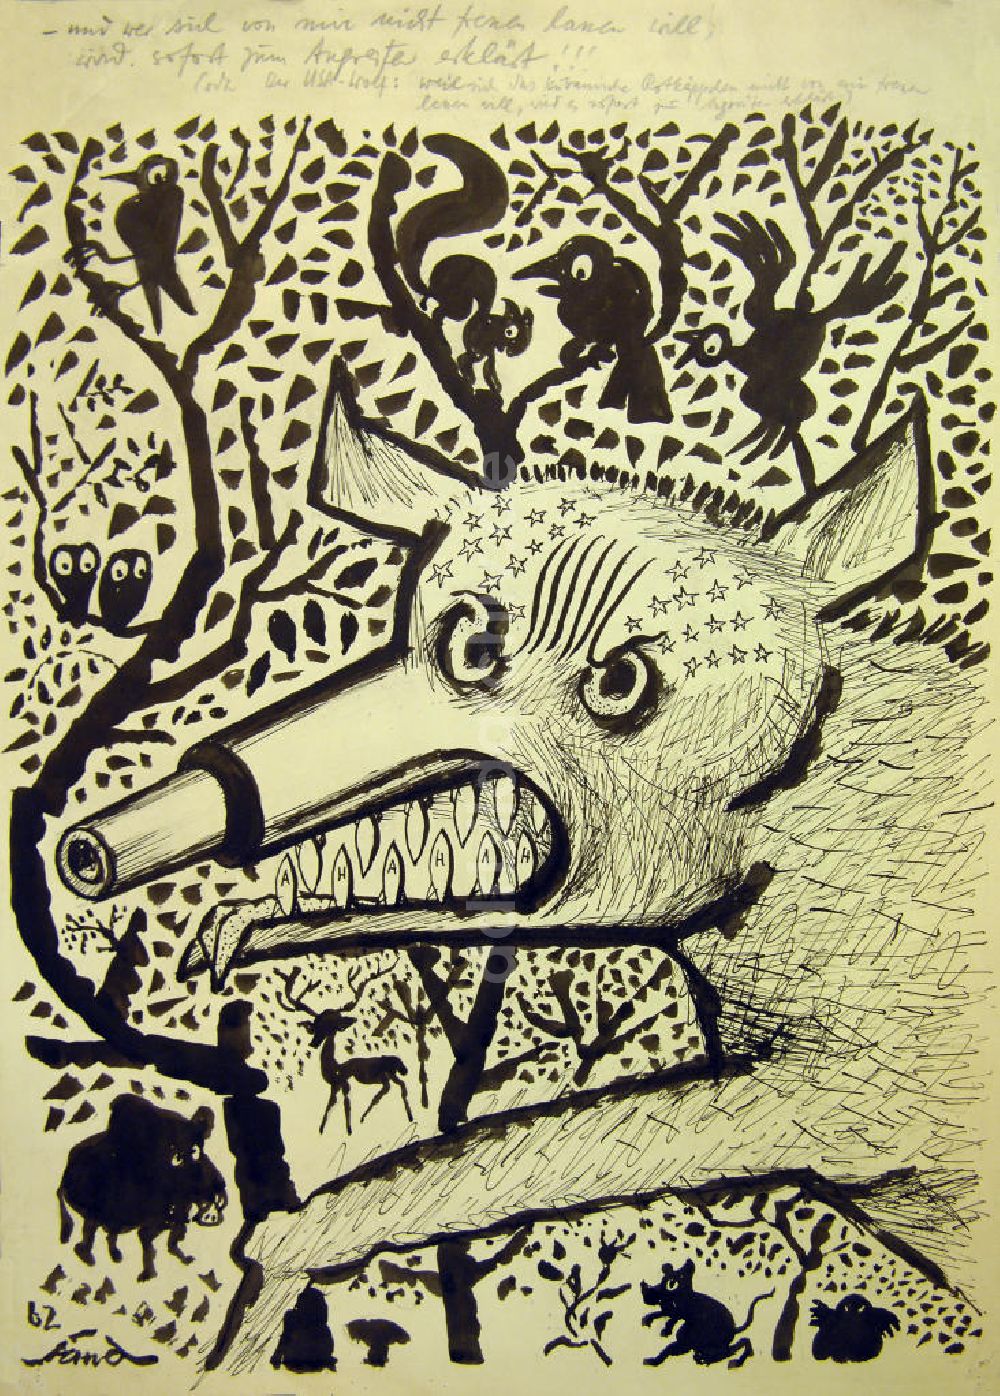 DDR-Fotoarchiv: Berlin - Zeichnung von Herbert Sandberg Der USA-Wolf aus dem Jahr 1962